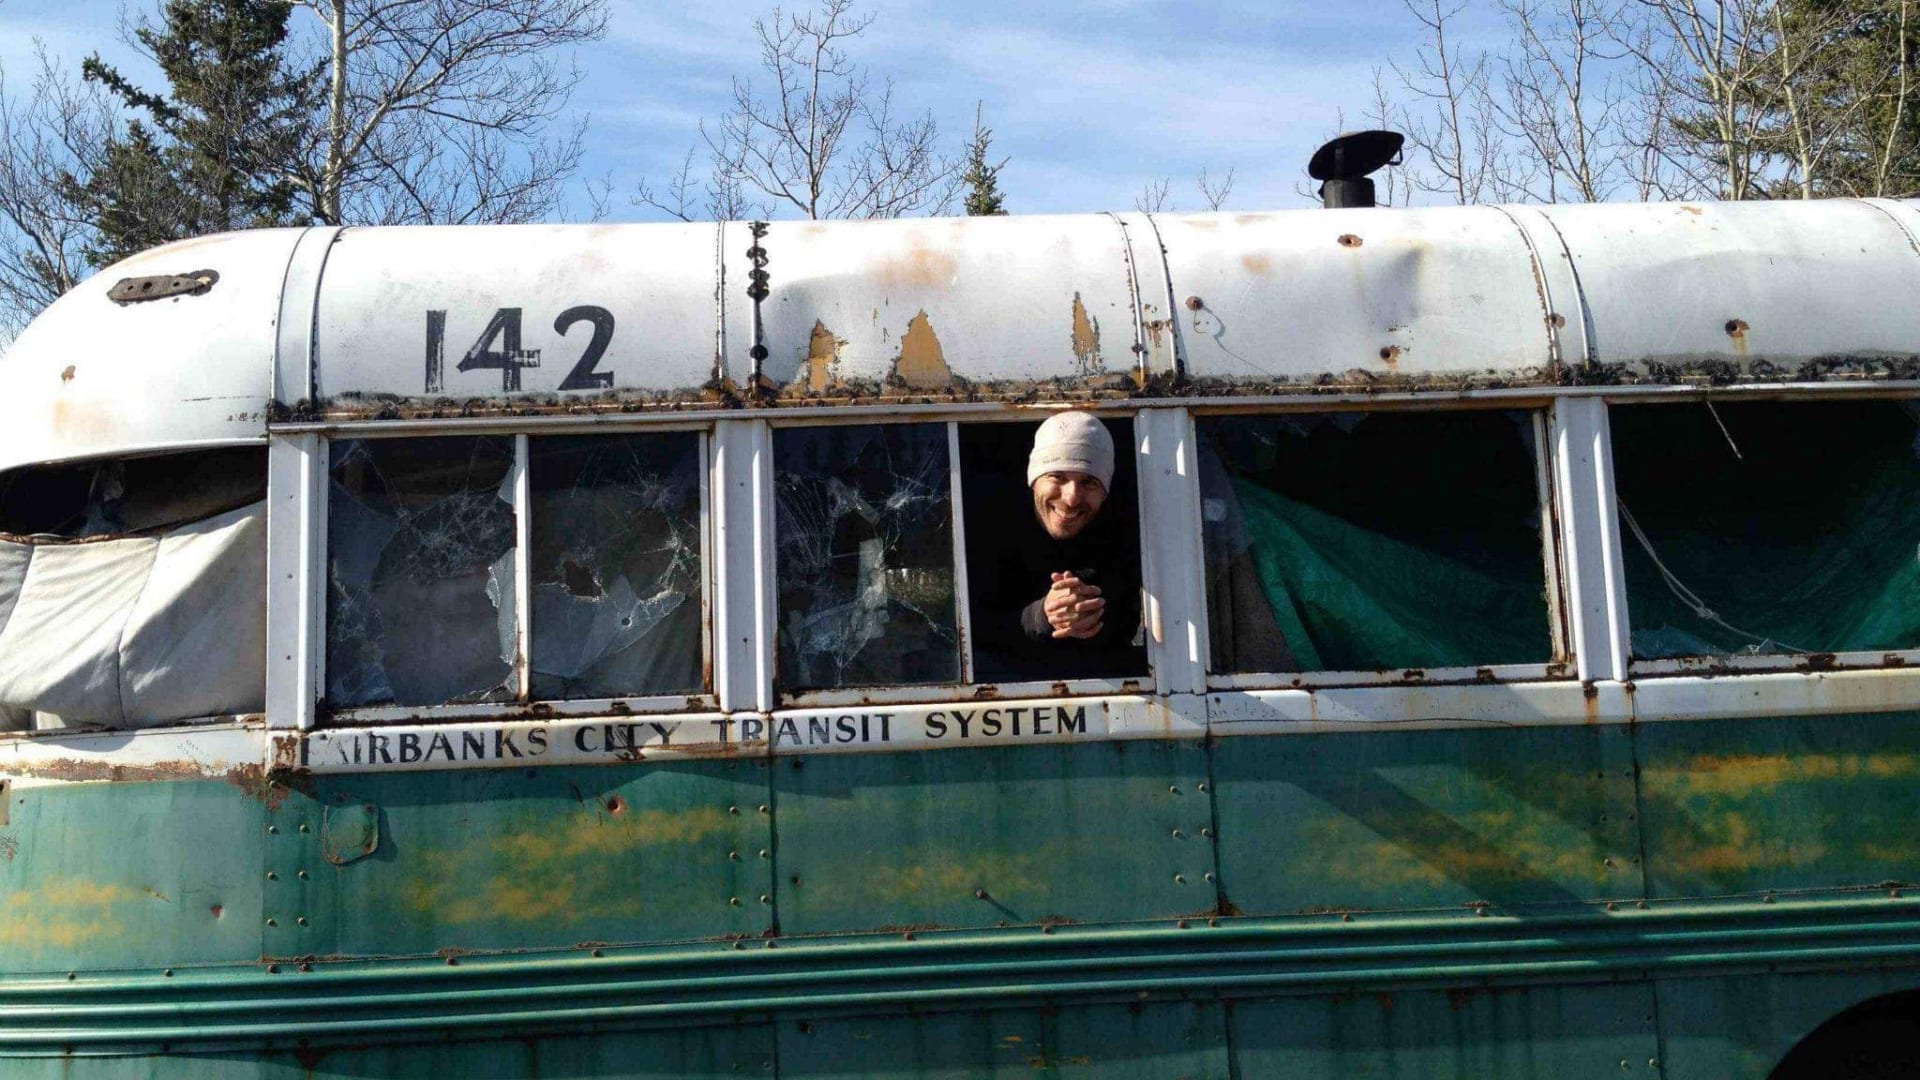 بعد نحو 60 عام من توقفها ببقعة نائية في آلاسكا.."الحافلة السحرية" تغادر محطتها الأخيرة